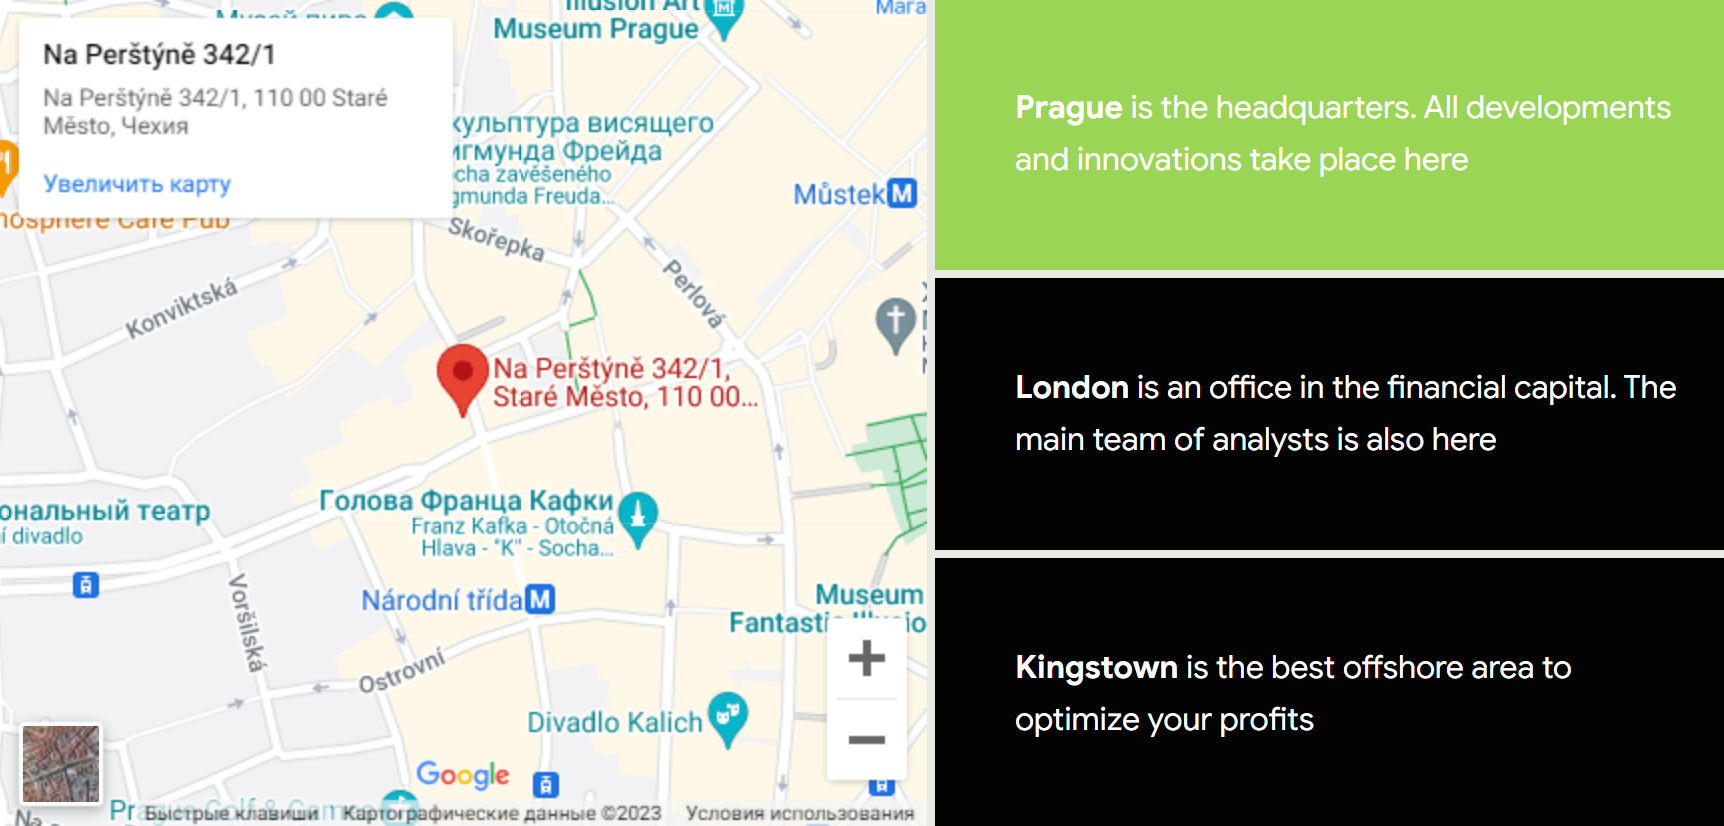 Компания заявляет, что у нее три офиса: в Праге, Лондоне и Кингстауне. Конкретные адреса не указаны, поэтому проверить их у меня не получилось